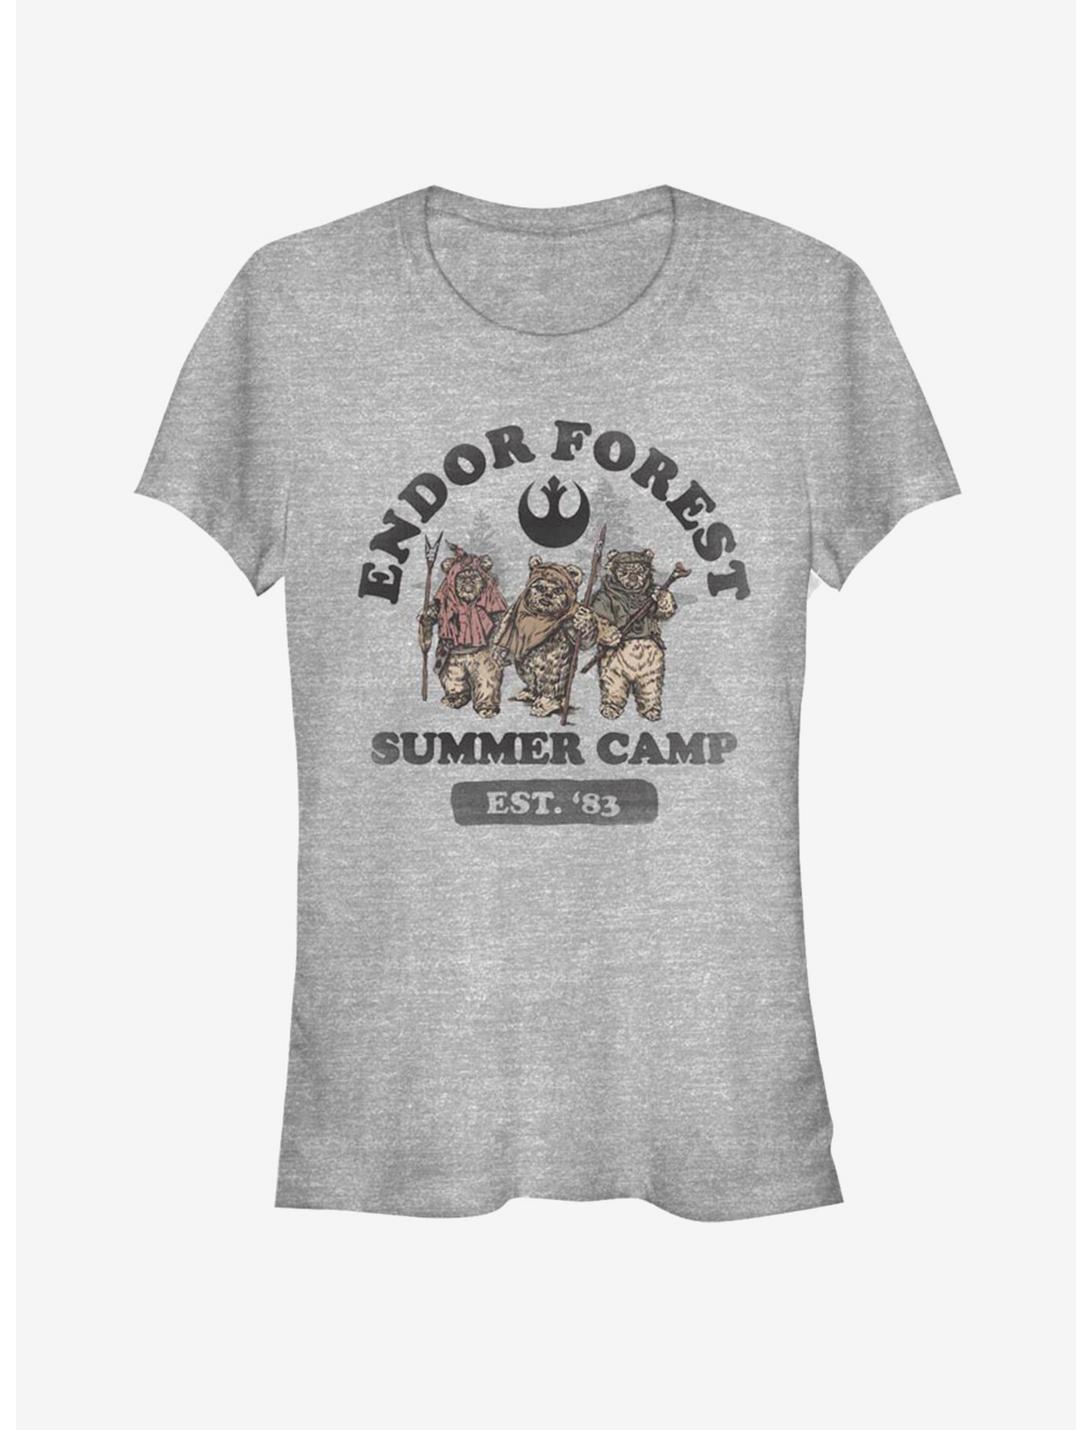 Star Wars Endor Summer Camp Girls T-Shirt, ATH HTR, hi-res